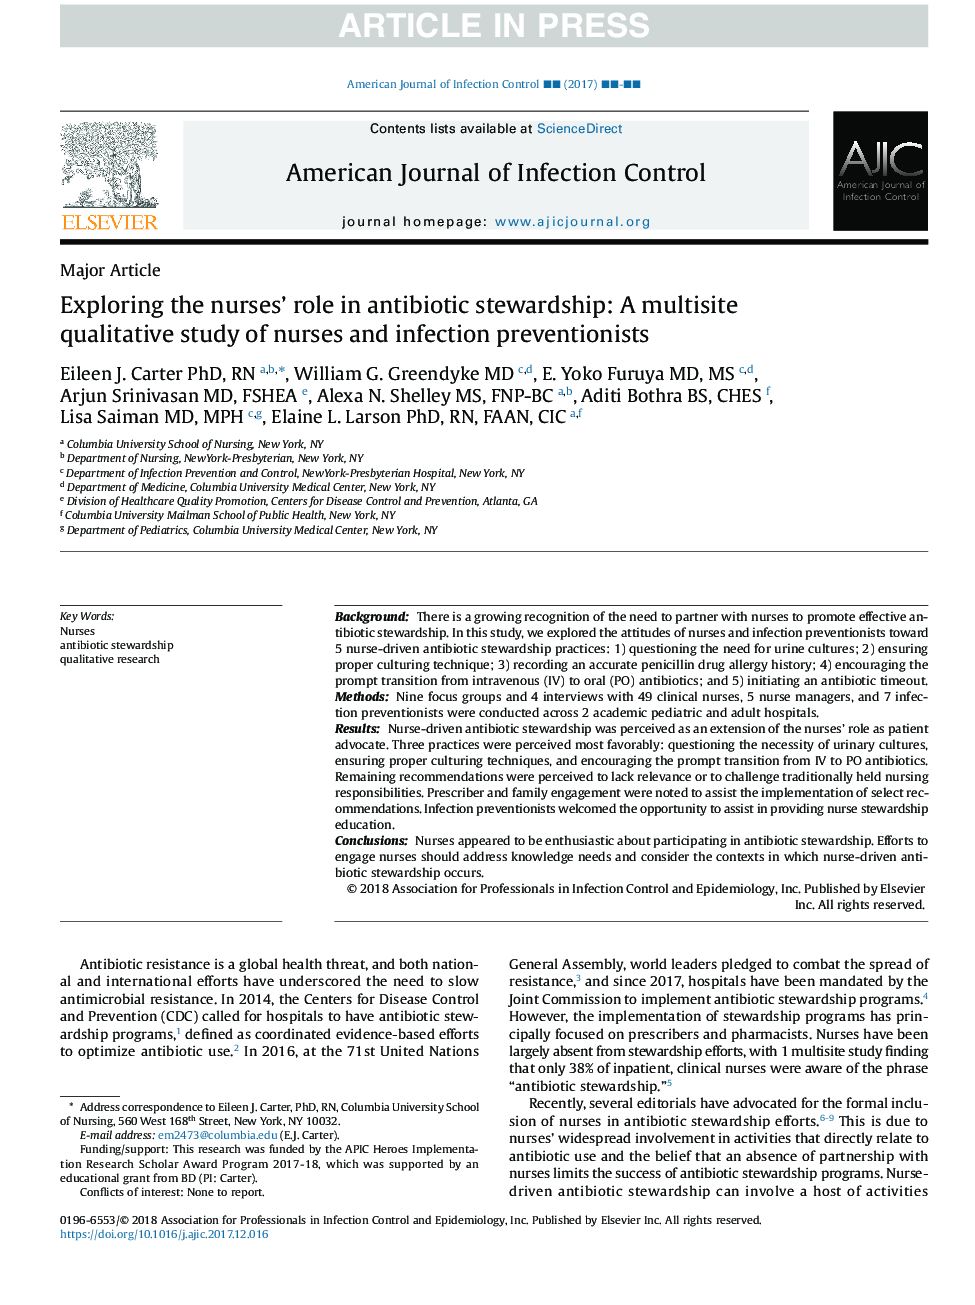 بررسی نقش پرستاران در نگهداری آنتی بیوتیک: مطالعه کیفی چندساله پرستاران و پیشگیری از عفونت 